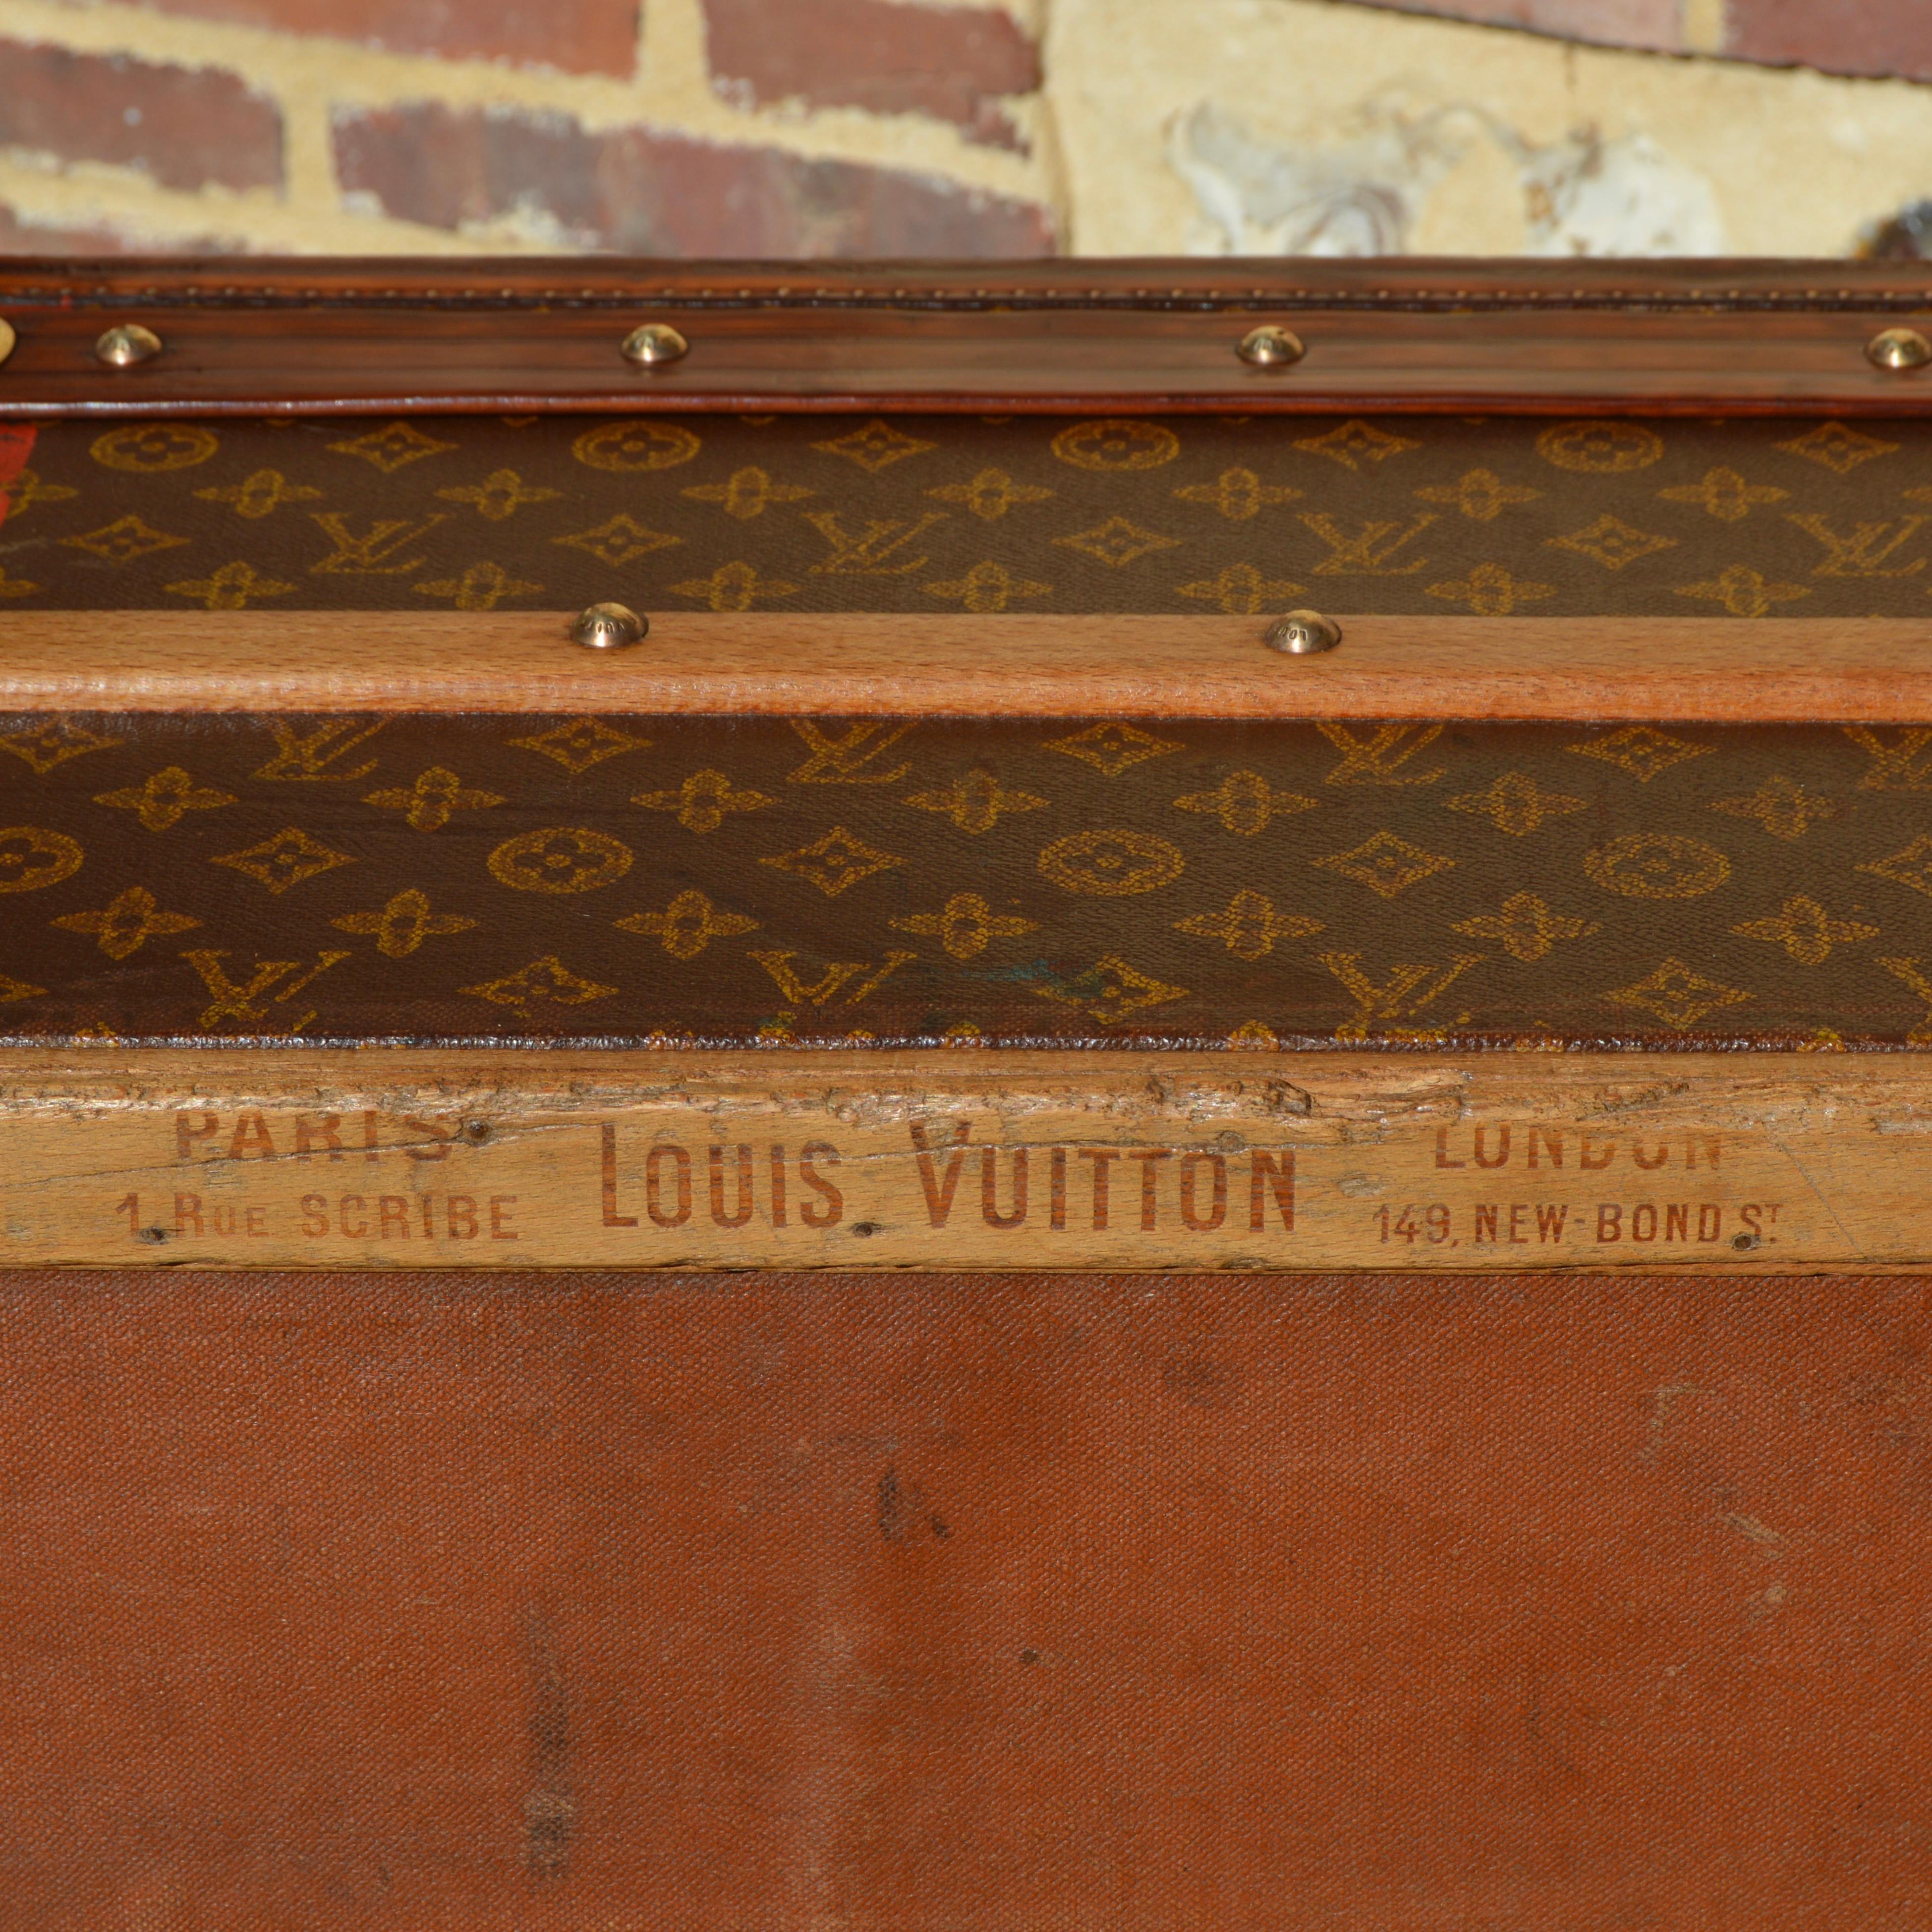 Louis Vuitton antique travel trunk c.1910 12